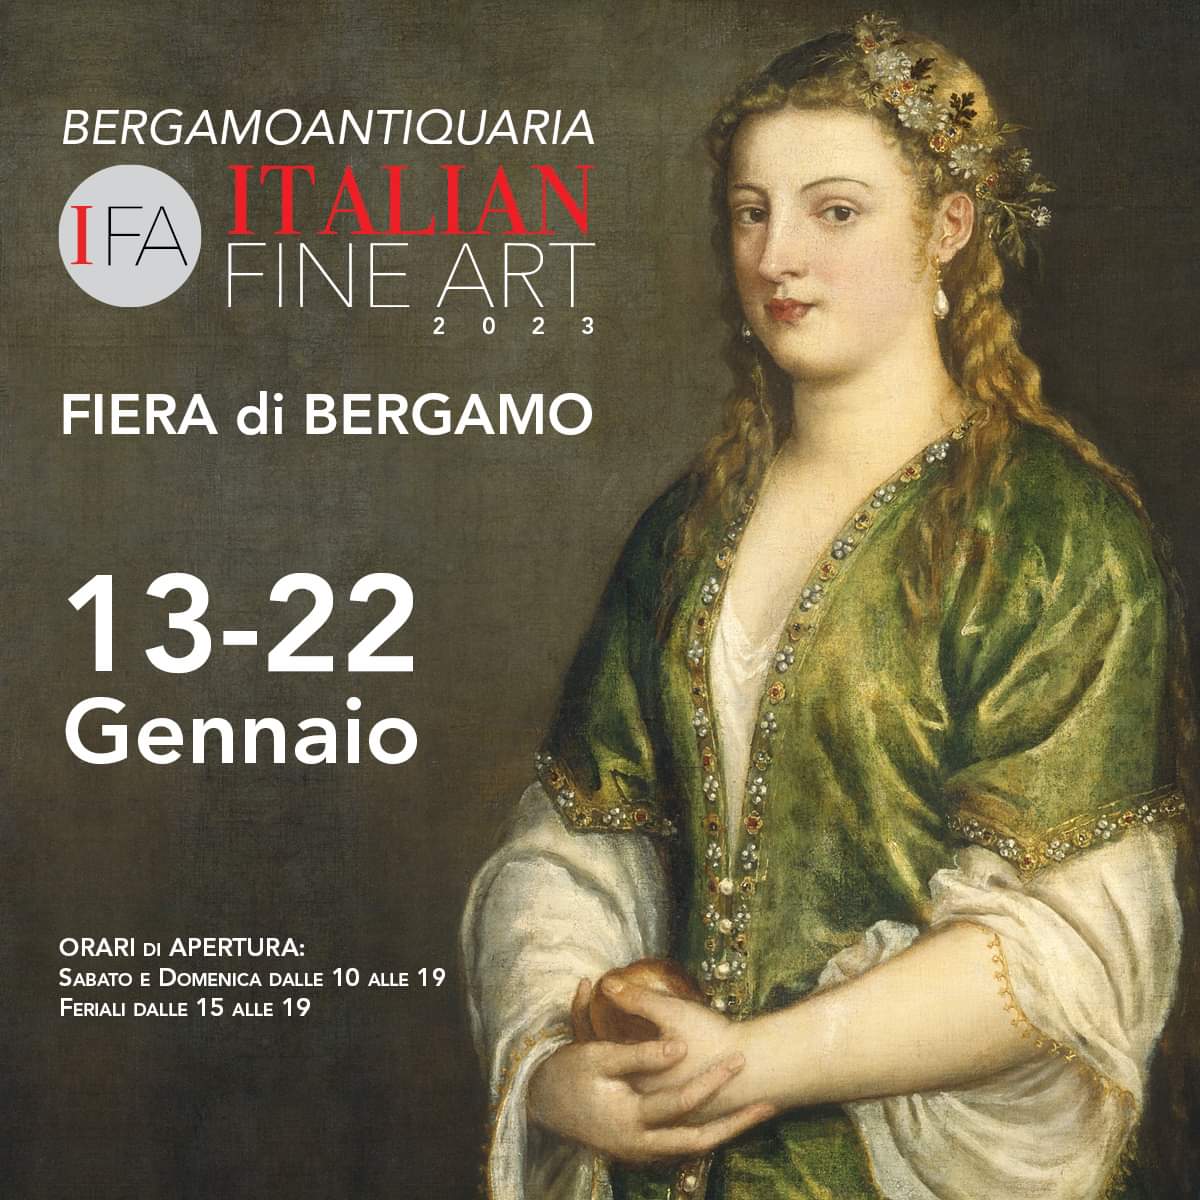 FA - Italian Fine Art ti aspetta dal 13 al 22 gennaio 2023